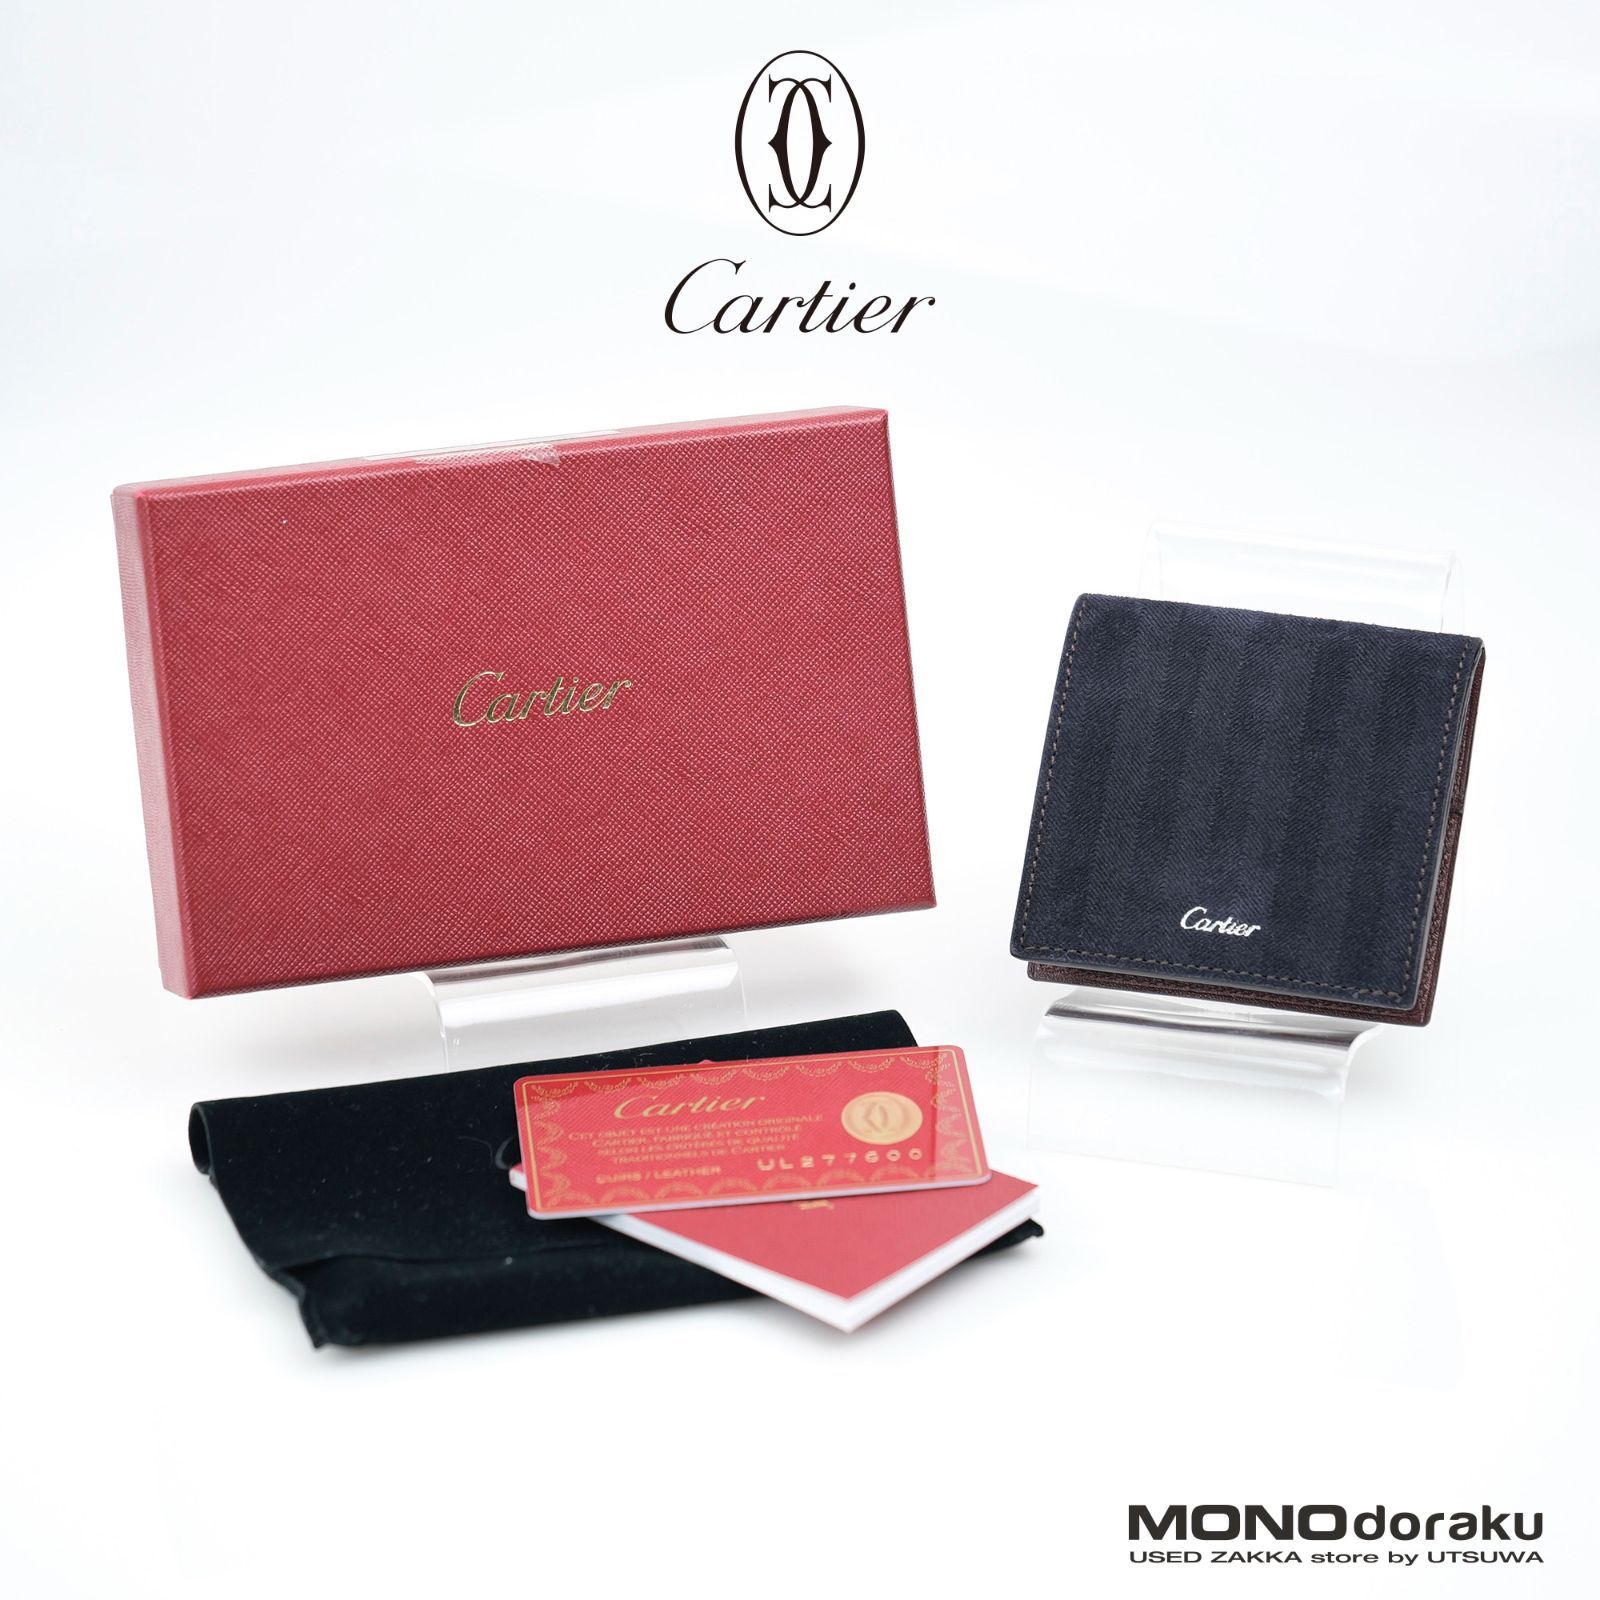 Cartier/カルティエ コインケース 小銭入れ ボックス型 本革×スエード